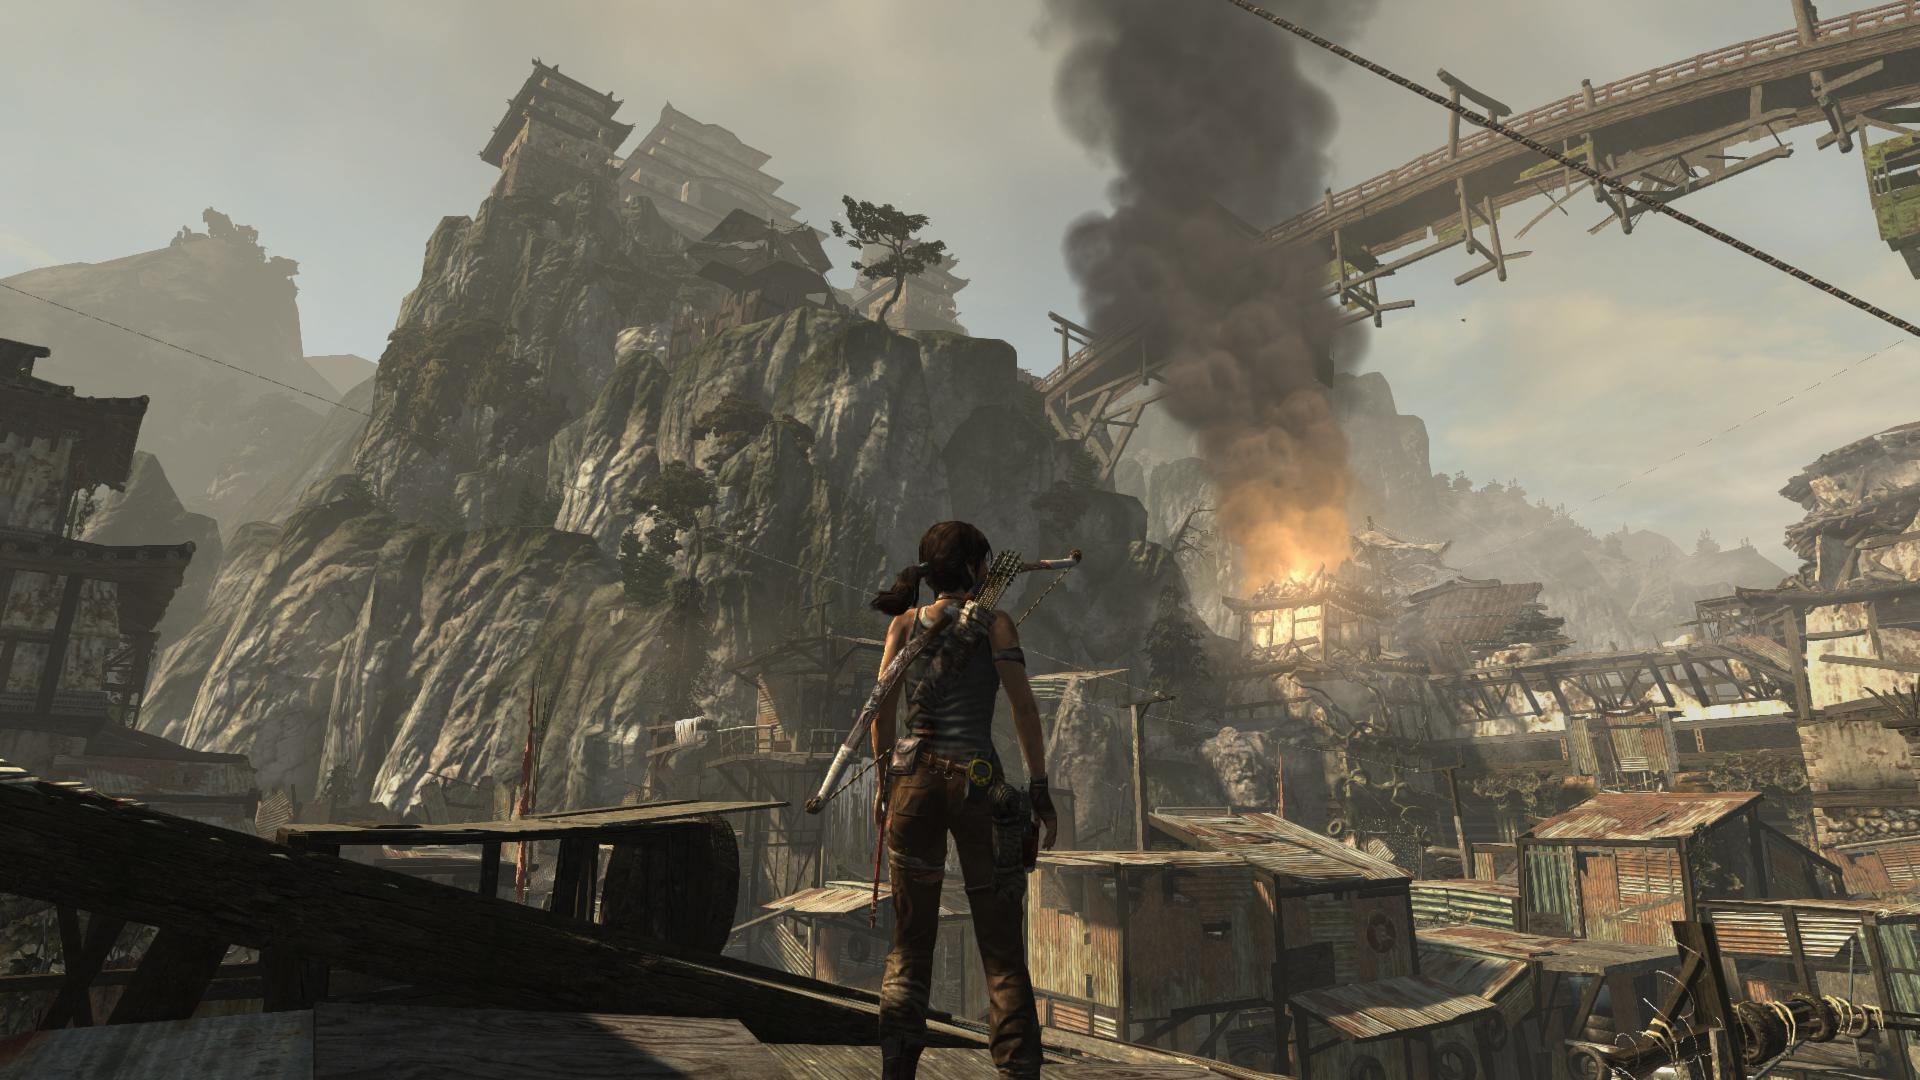 Где есть такие игры разные. Томб Райдер 2013 геймплей. Tomb Raider 2013 геймплей. Tomb Raider 2013 Gameplay. Tomb Raider игра 2013 геймплей.